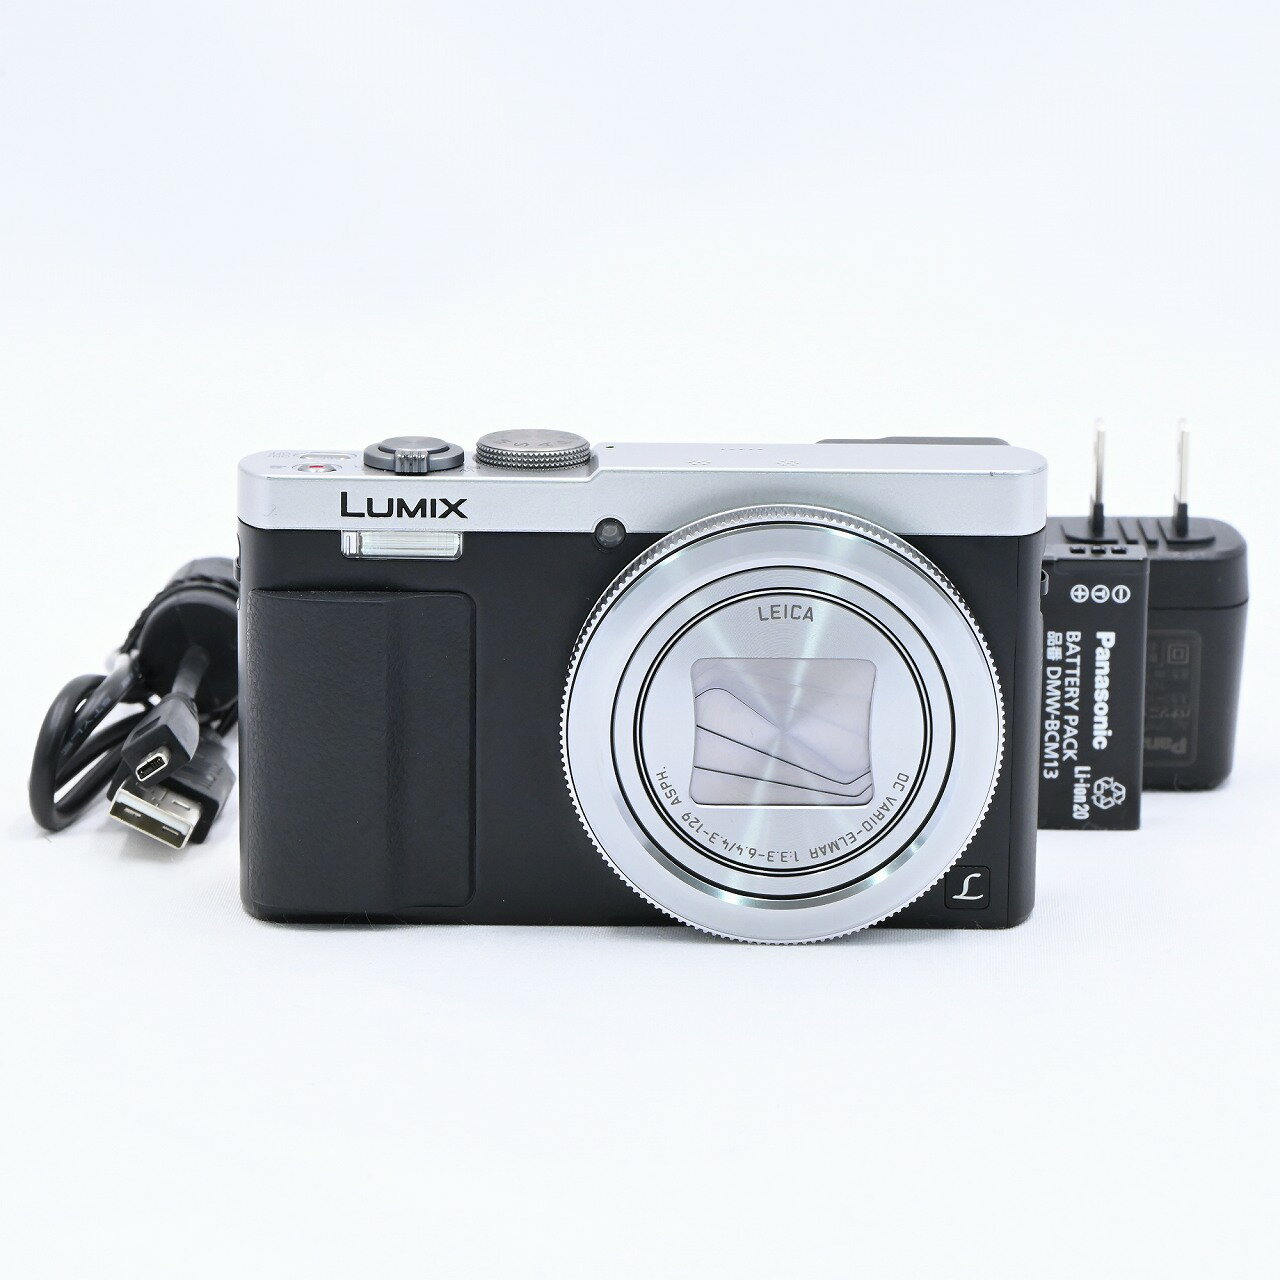 パナソニック Panasonic Lumix TZ70 シルバー DMC-TZ70-S コンパクトデジタルカメラ【中古】